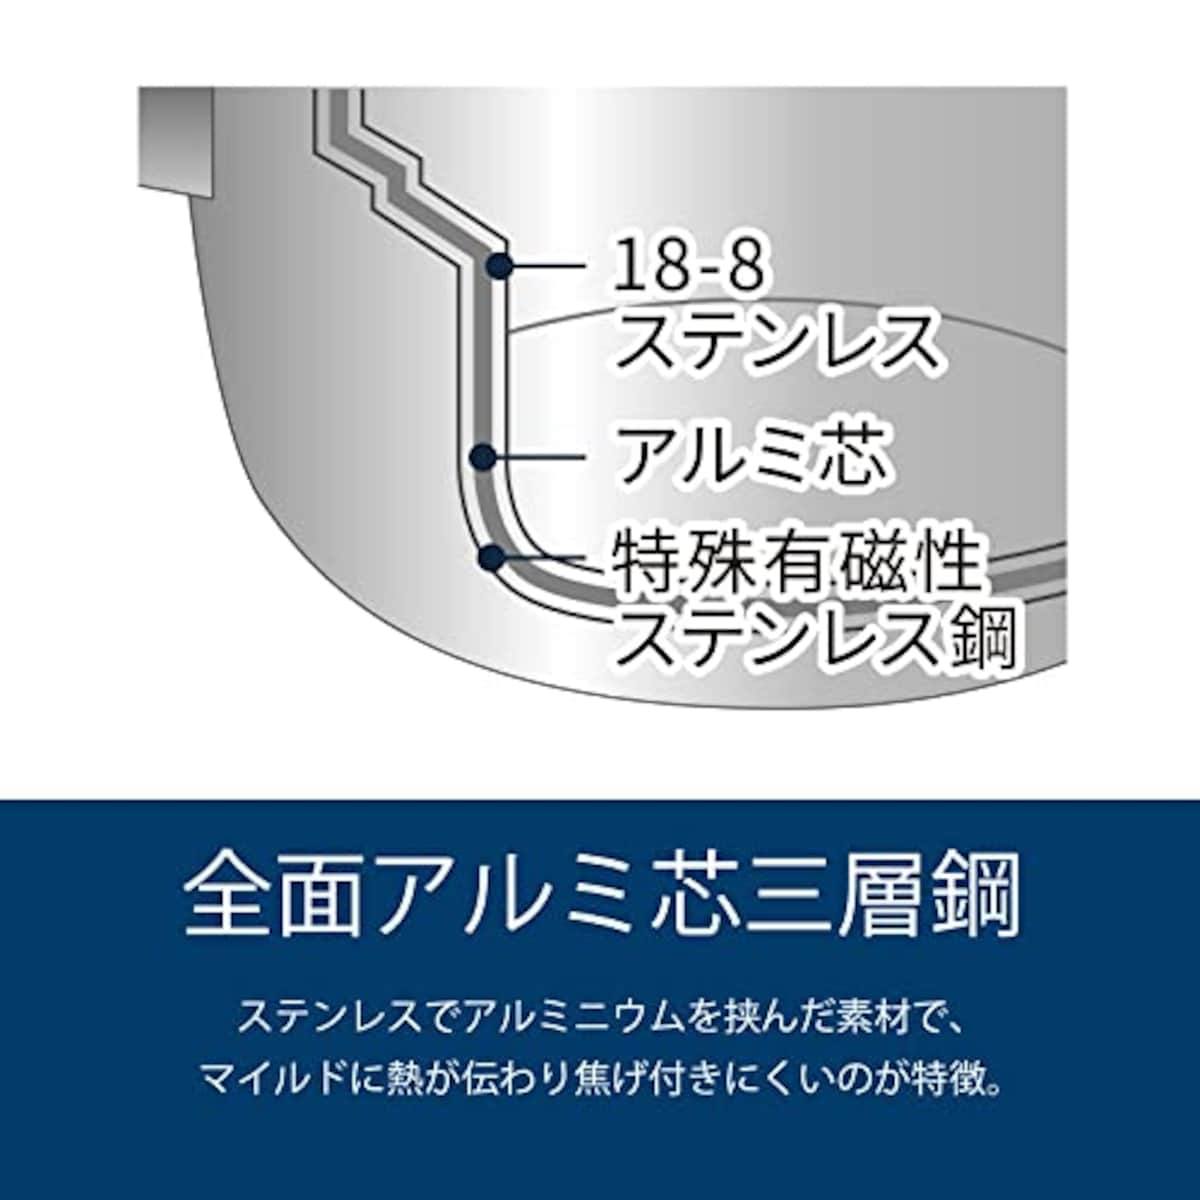  宮崎製作所 オブジェ アルミコア フライパン 25cm 日本製 5年保証 IH対応 軽量 OJ-55 シルバー画像5 